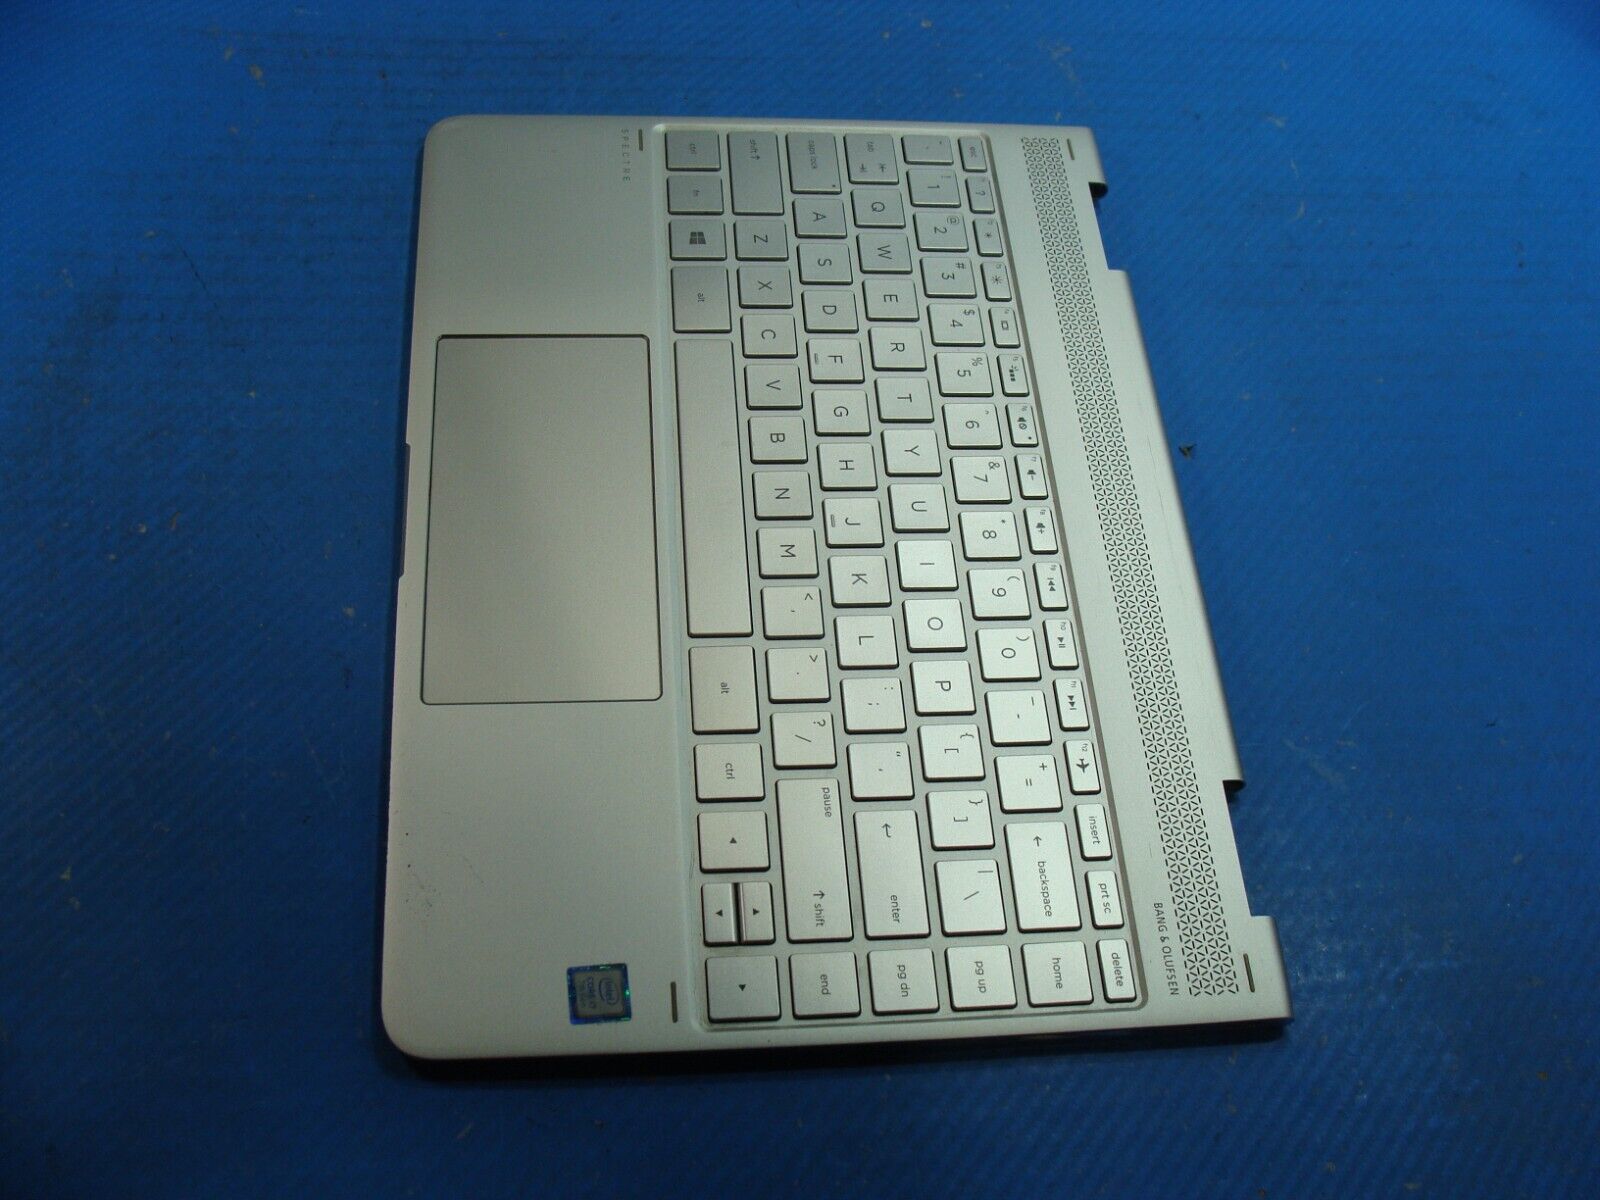 HP Spectre x360 13-w023dx 13.3 OEM Palmrest w/Touchpad BL Keyboard 907335-001